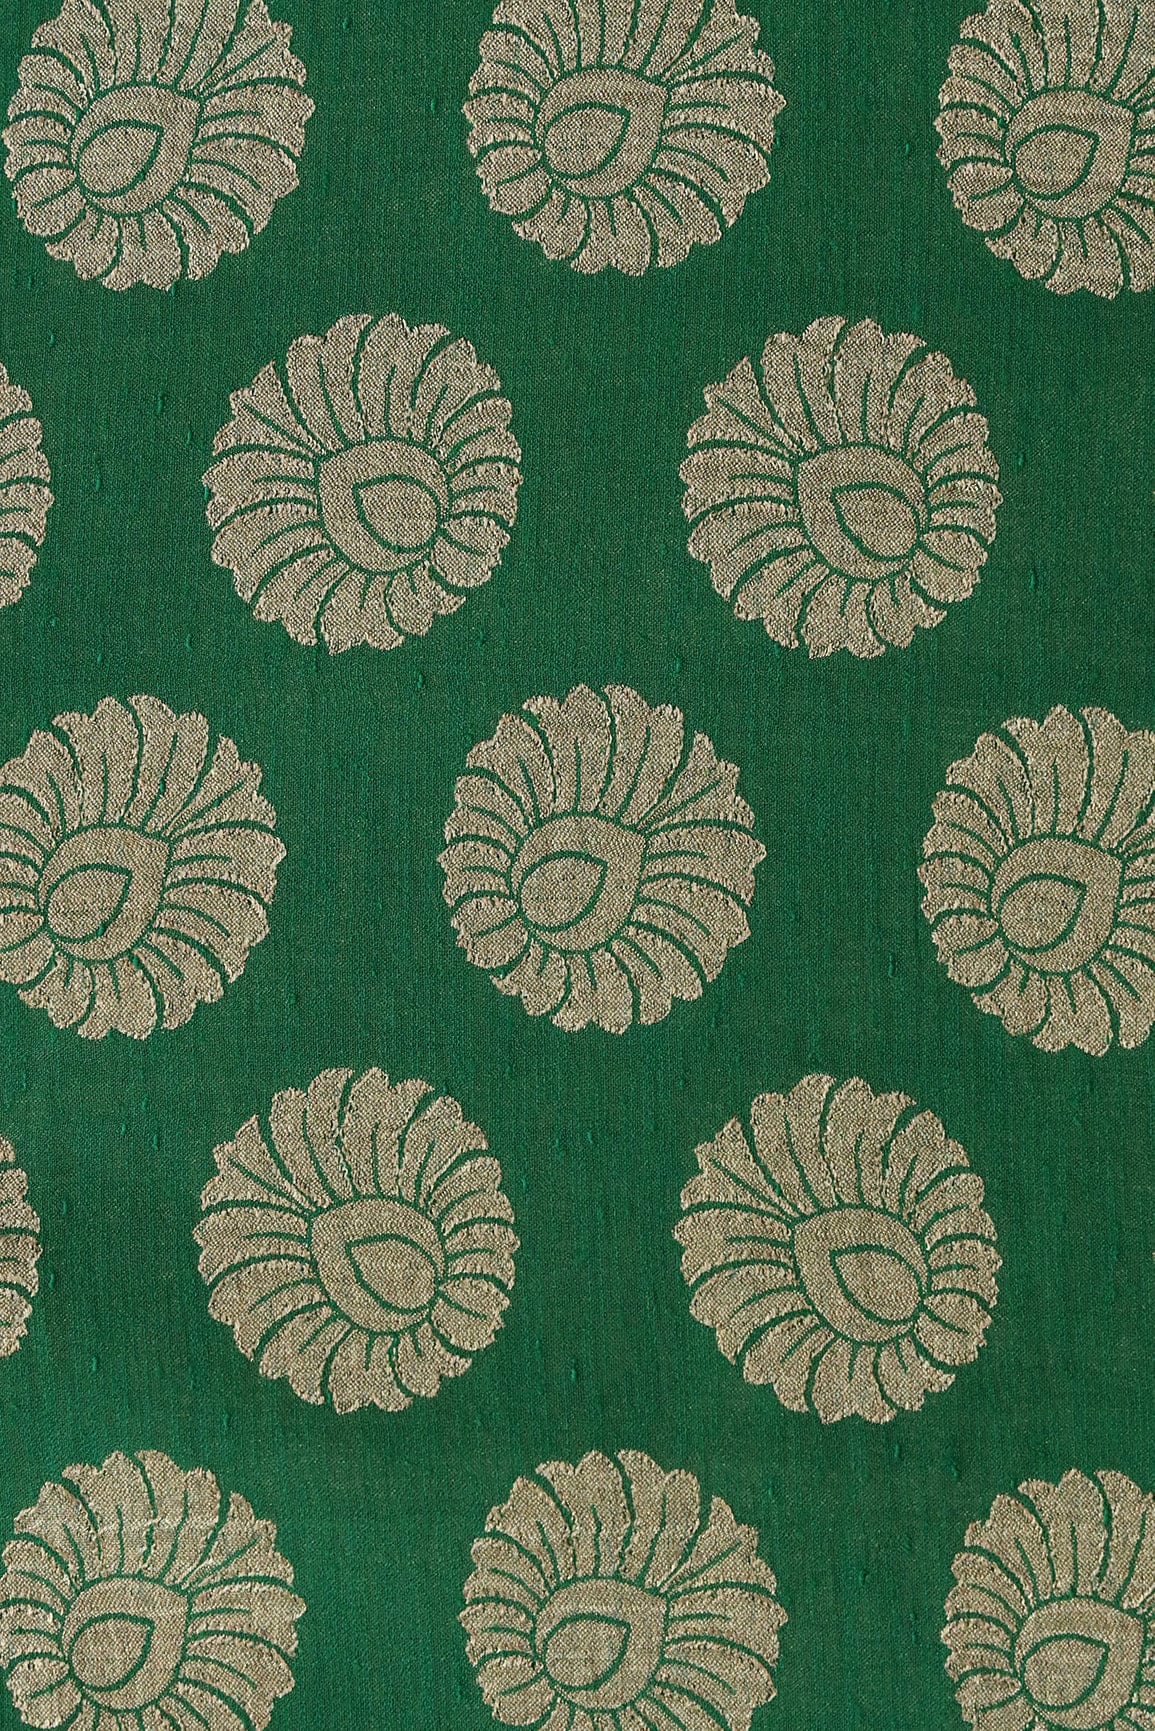 doeraa Banarasi Fabrics Green Ethnic Butta Pure Taspa Zari Banarasi Jacquard Fabric